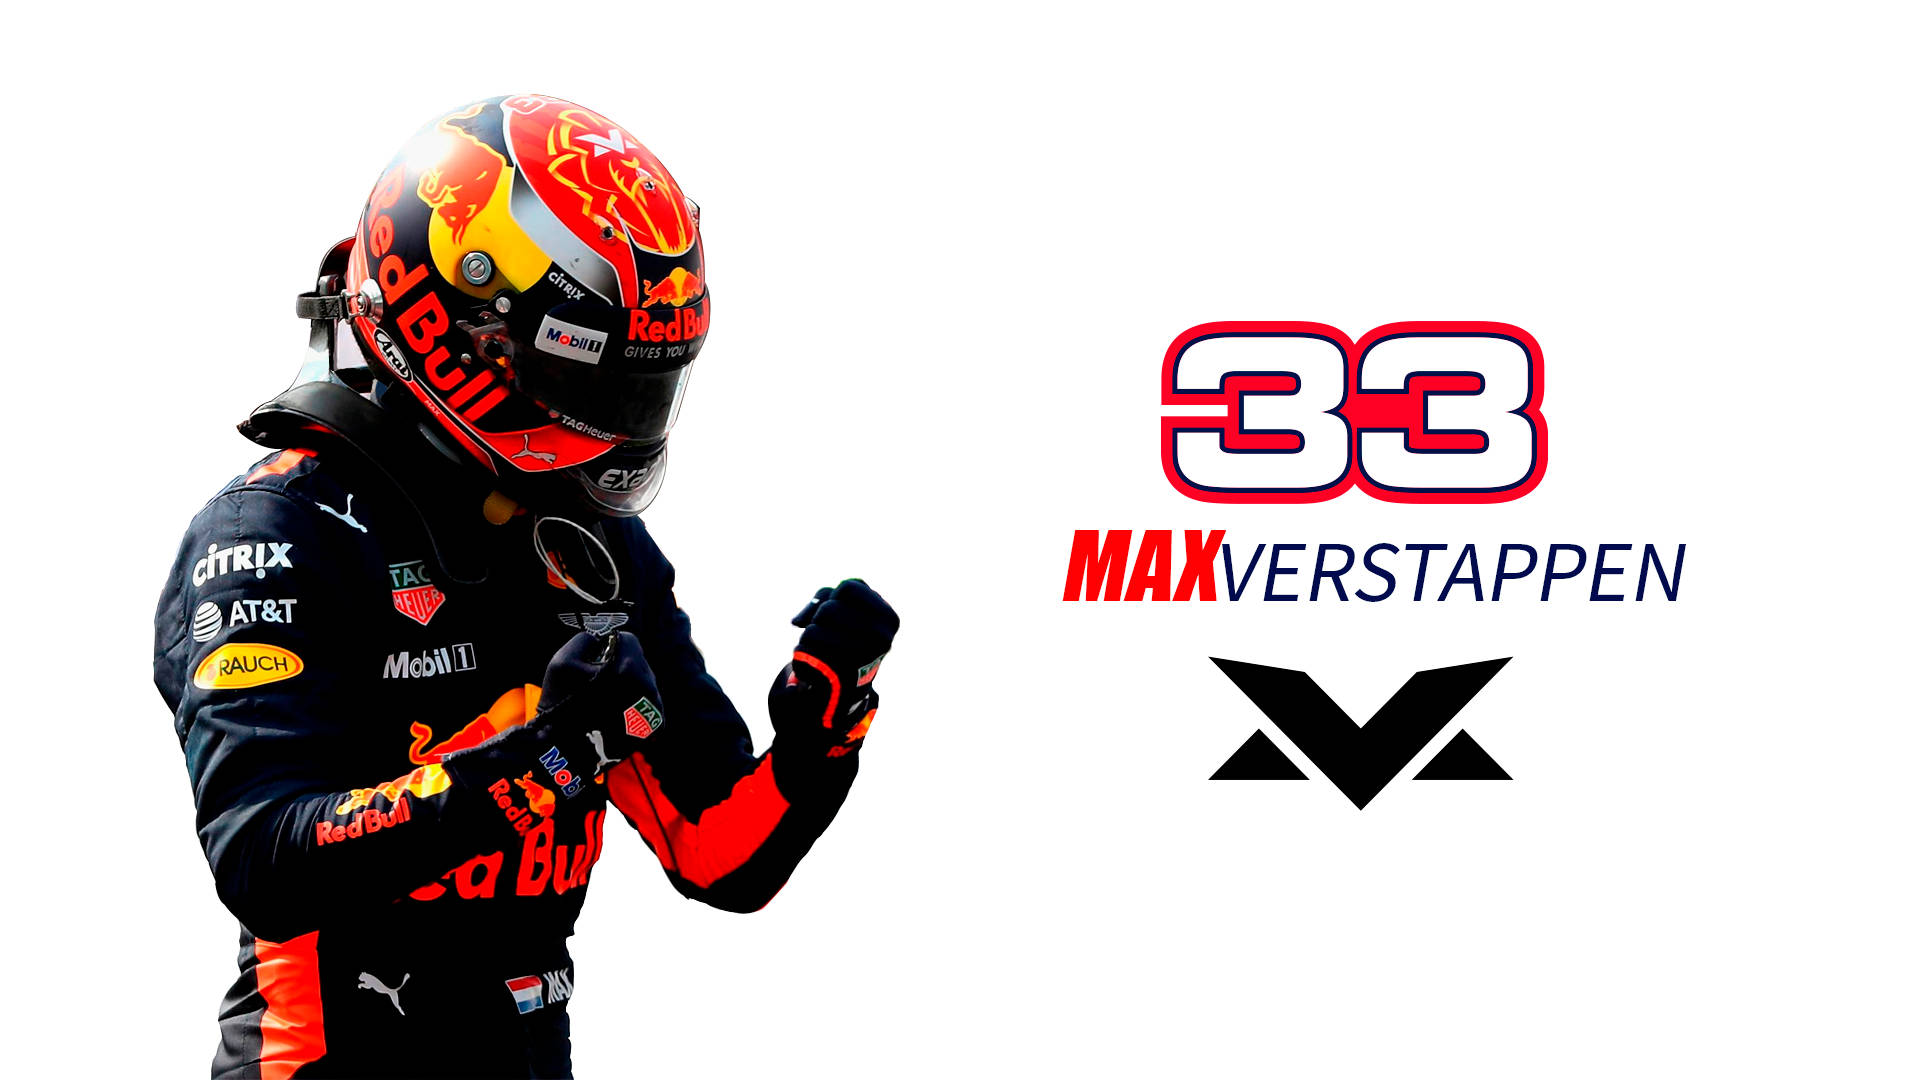 Max Verstappen Racing Number 33 Background